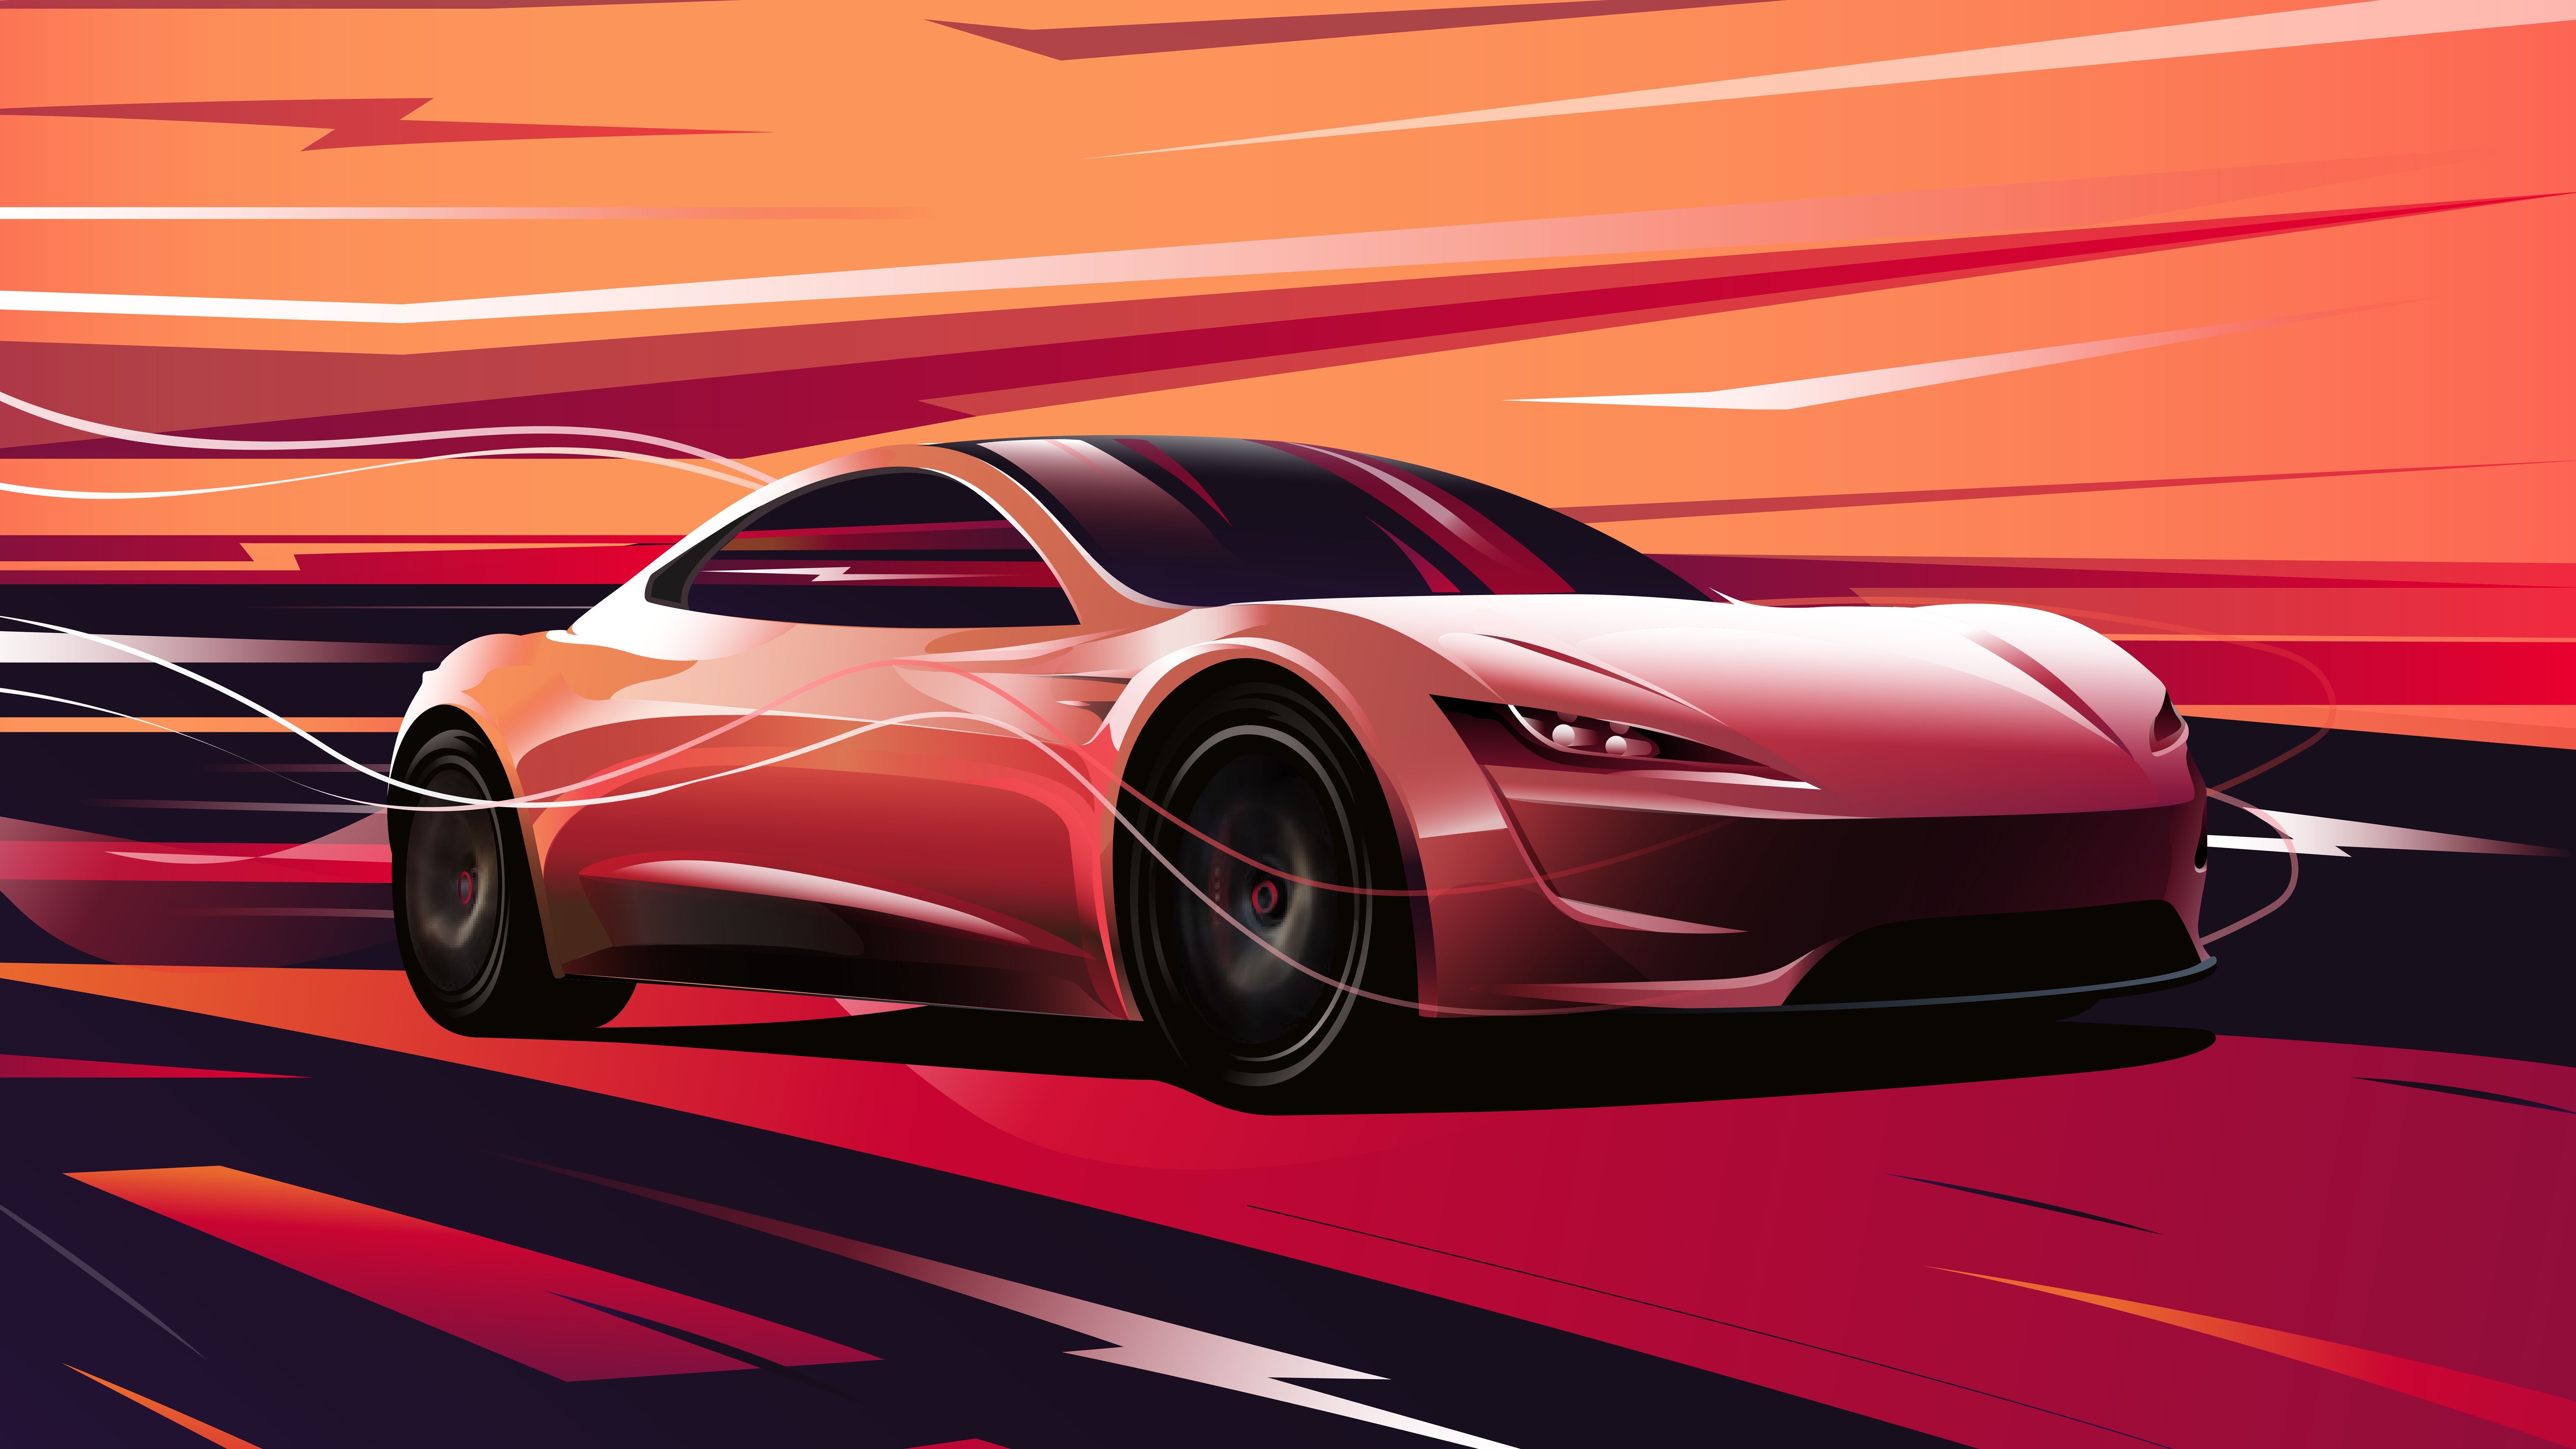 Tesla roadster HD Wallpaper & Background